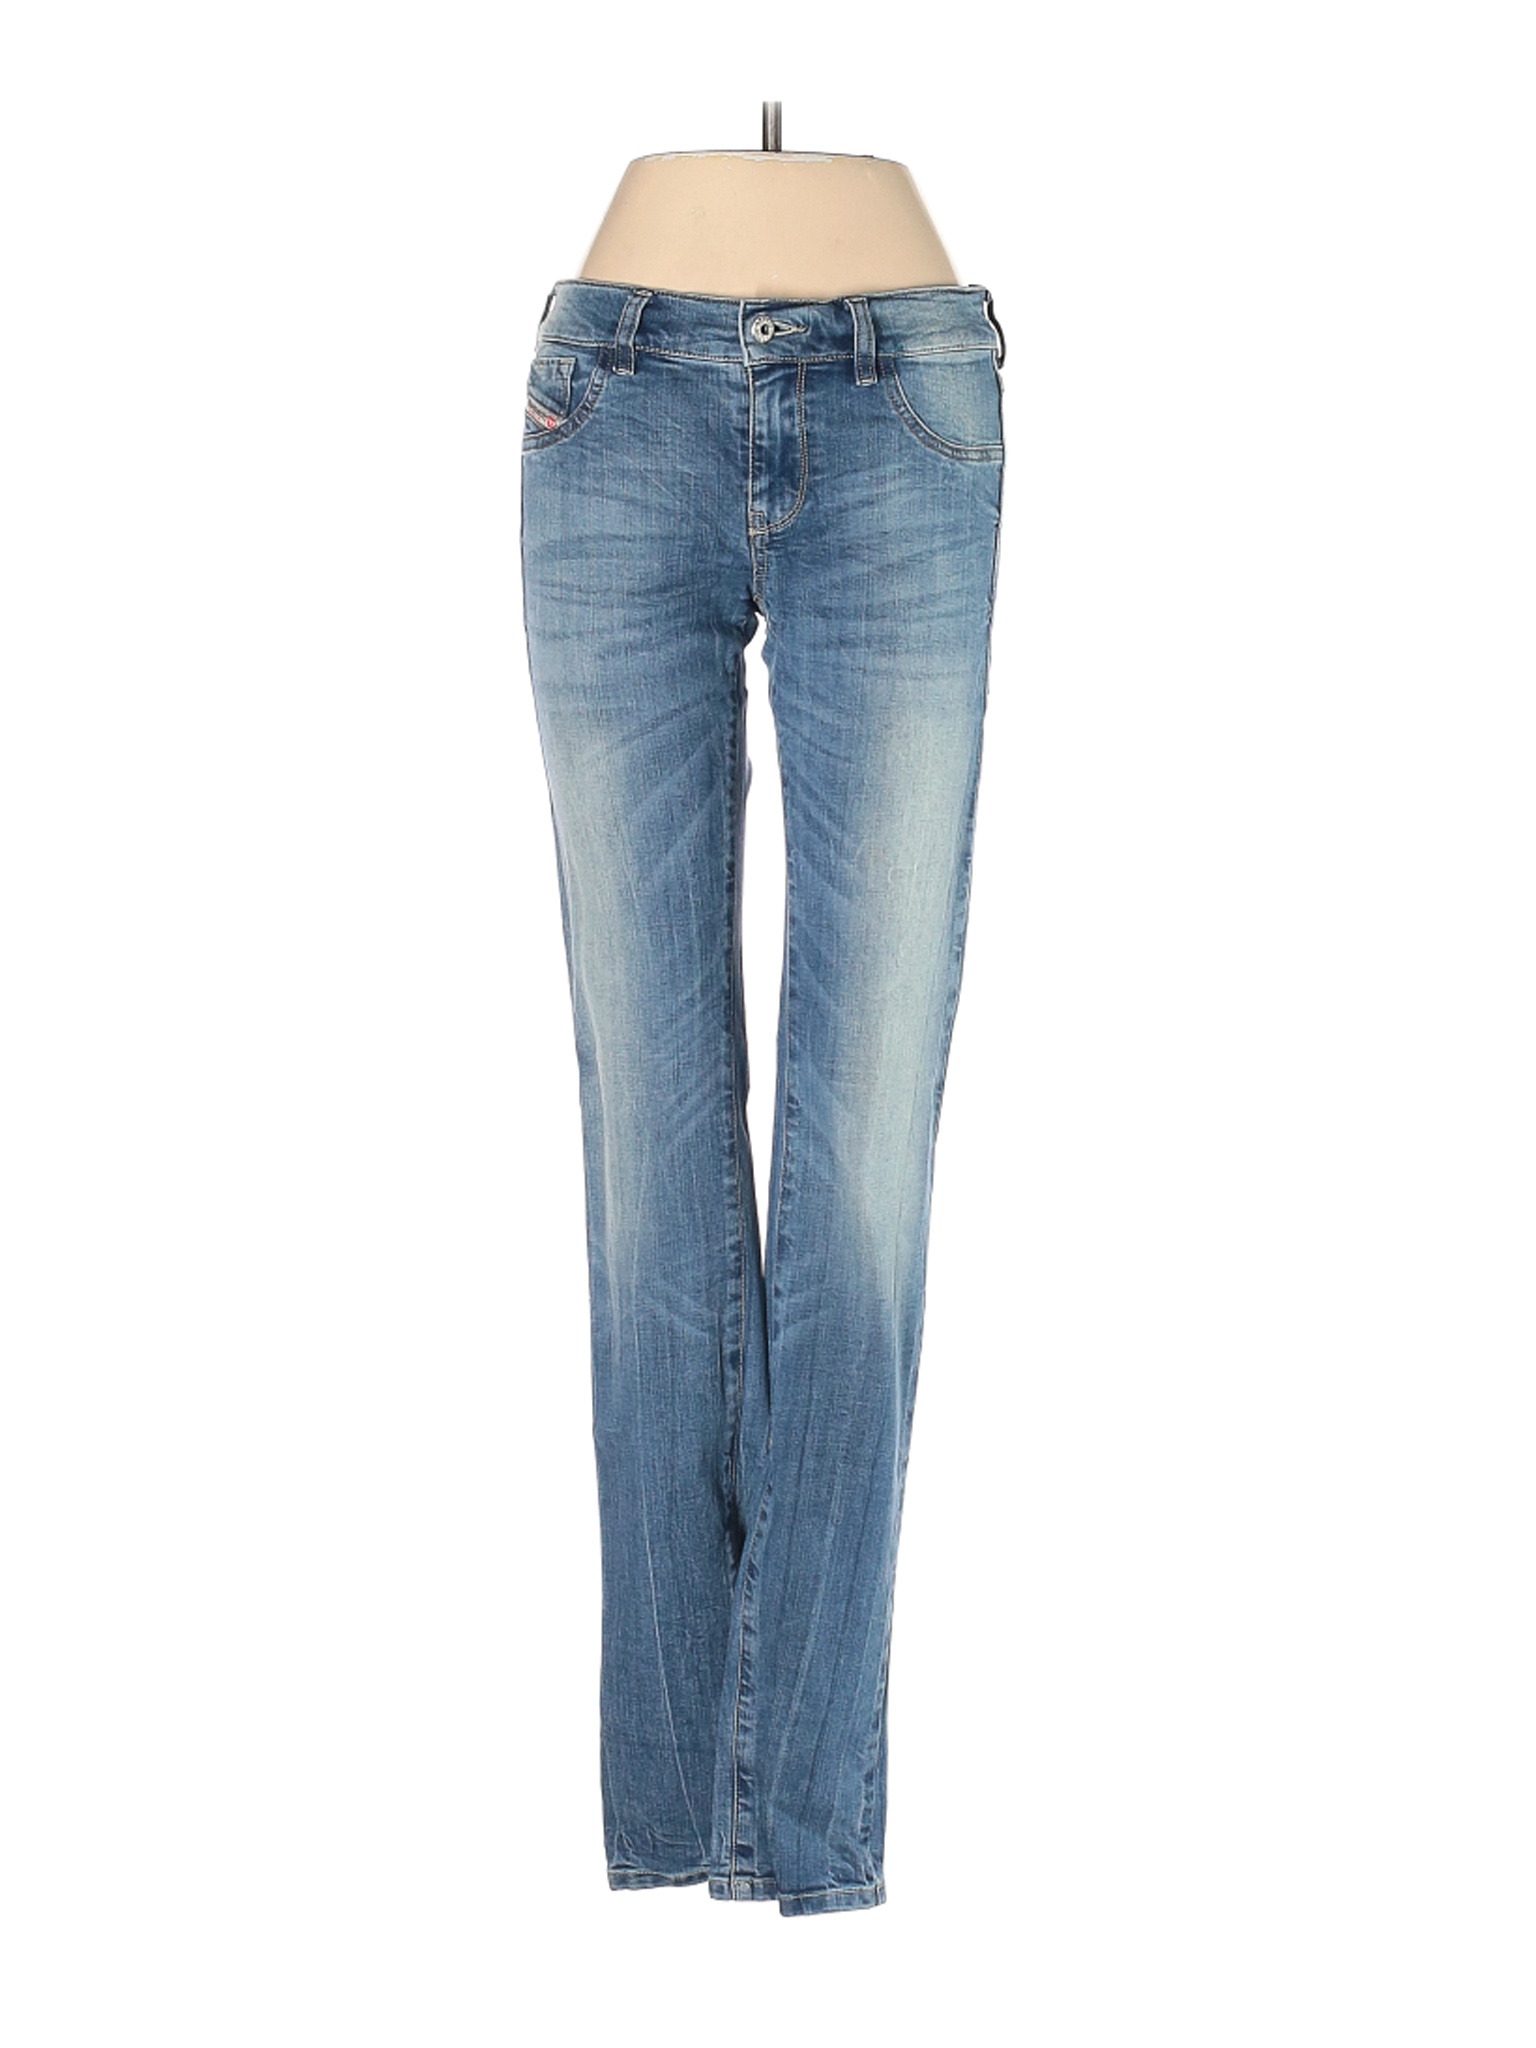 Diesel Women Blue Jeans 27W | eBay